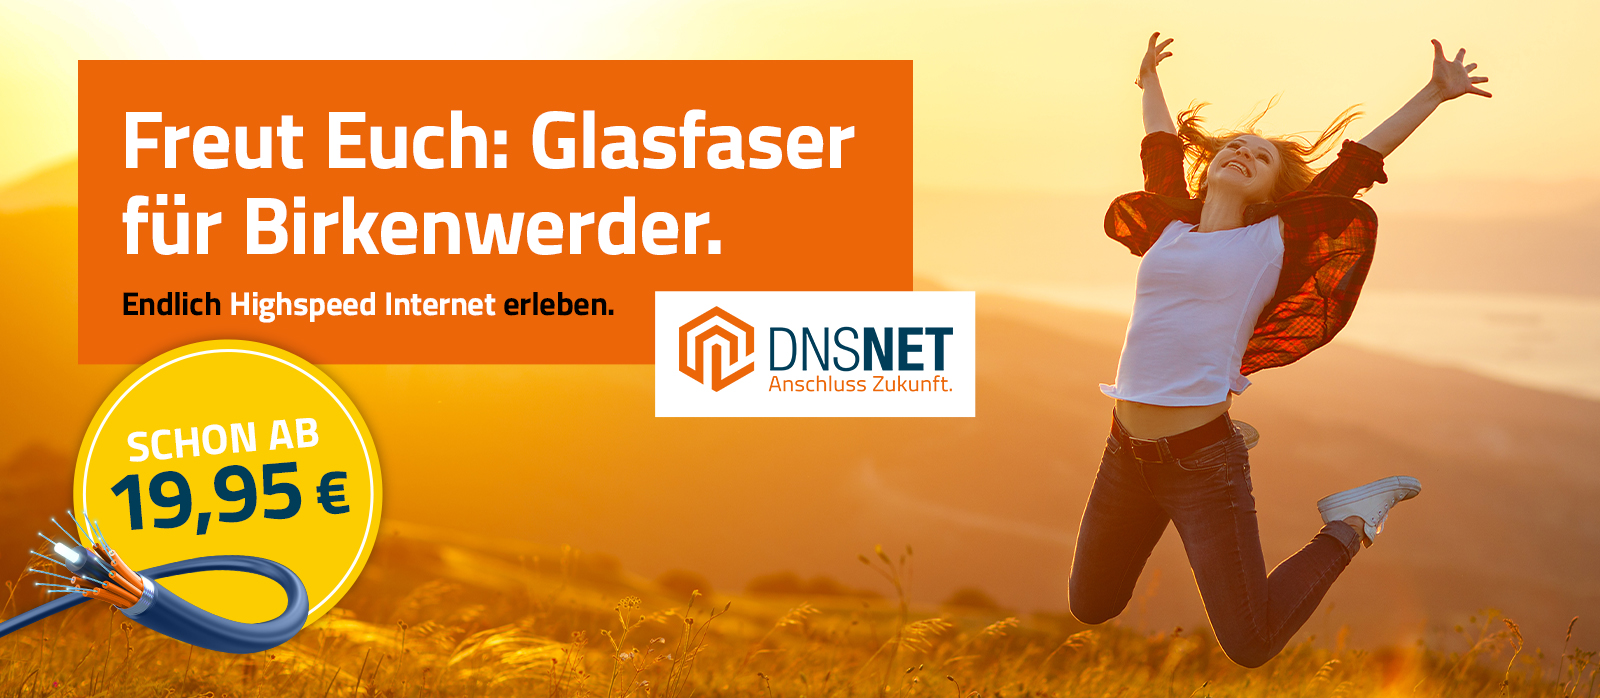 DNSNET-Web-Banner-Birkenwerder2-1600x698